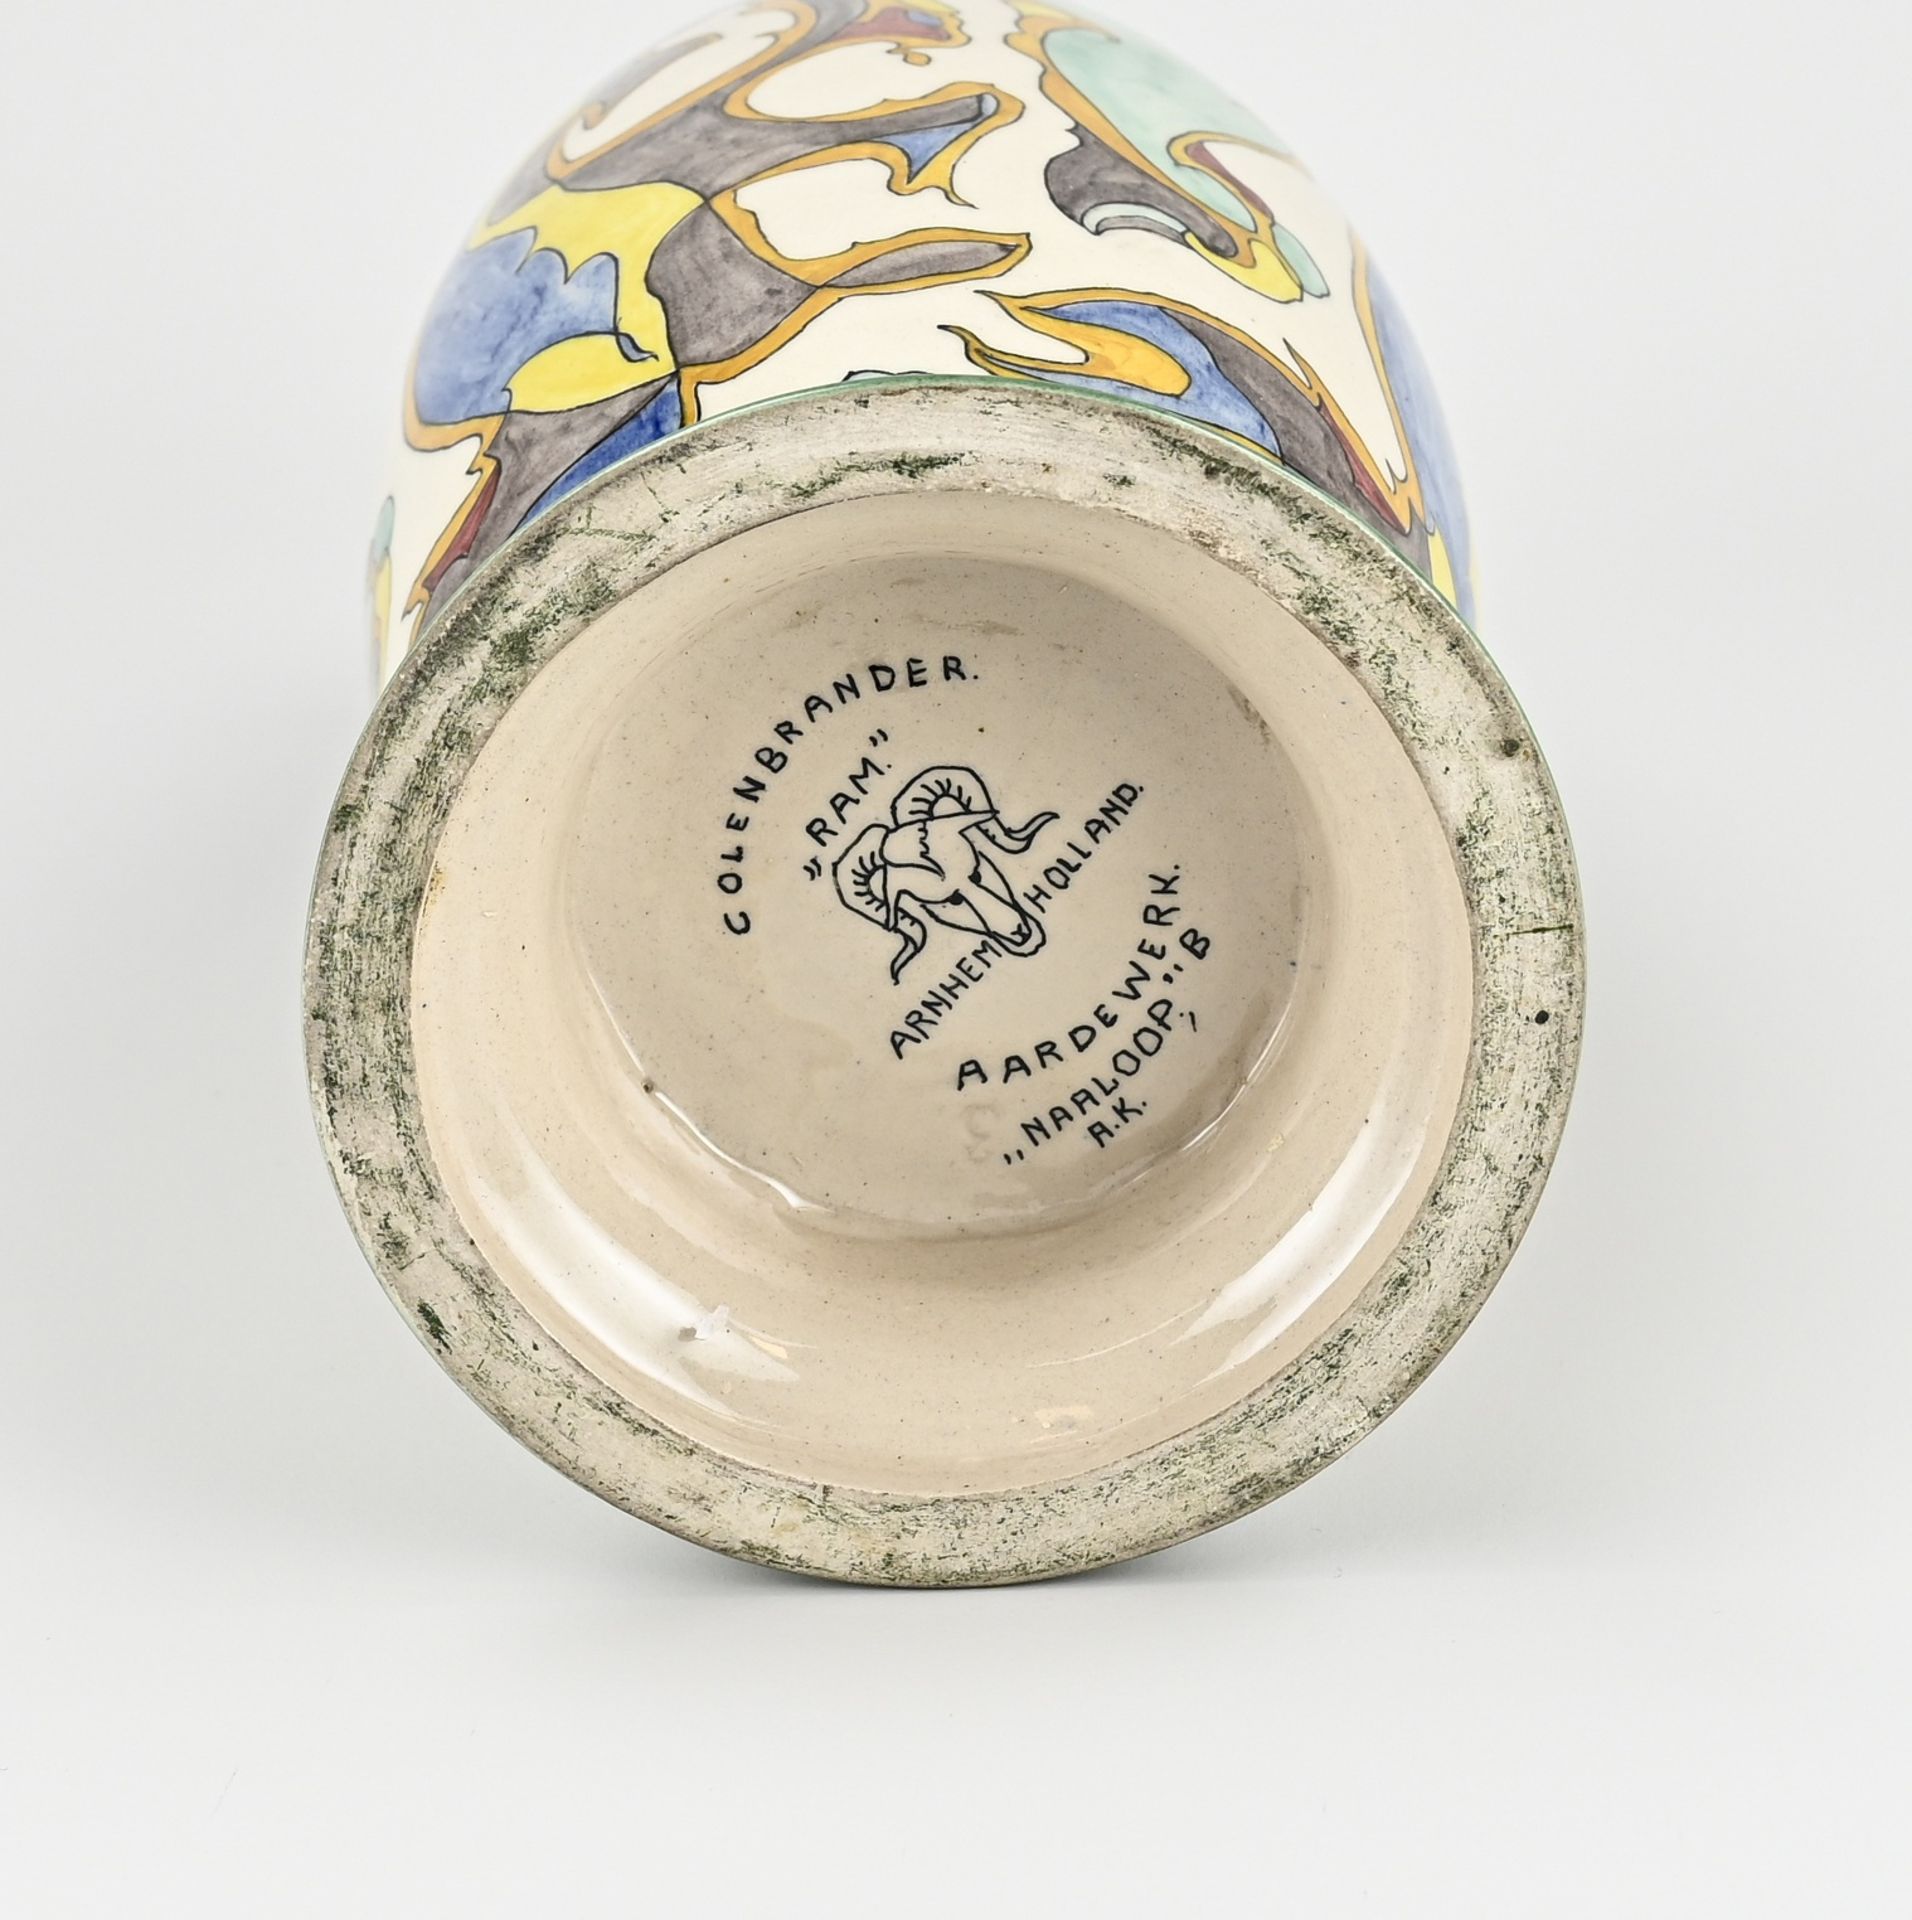 Colenbrander/Ram vase 'Naaloop' - Image 3 of 3